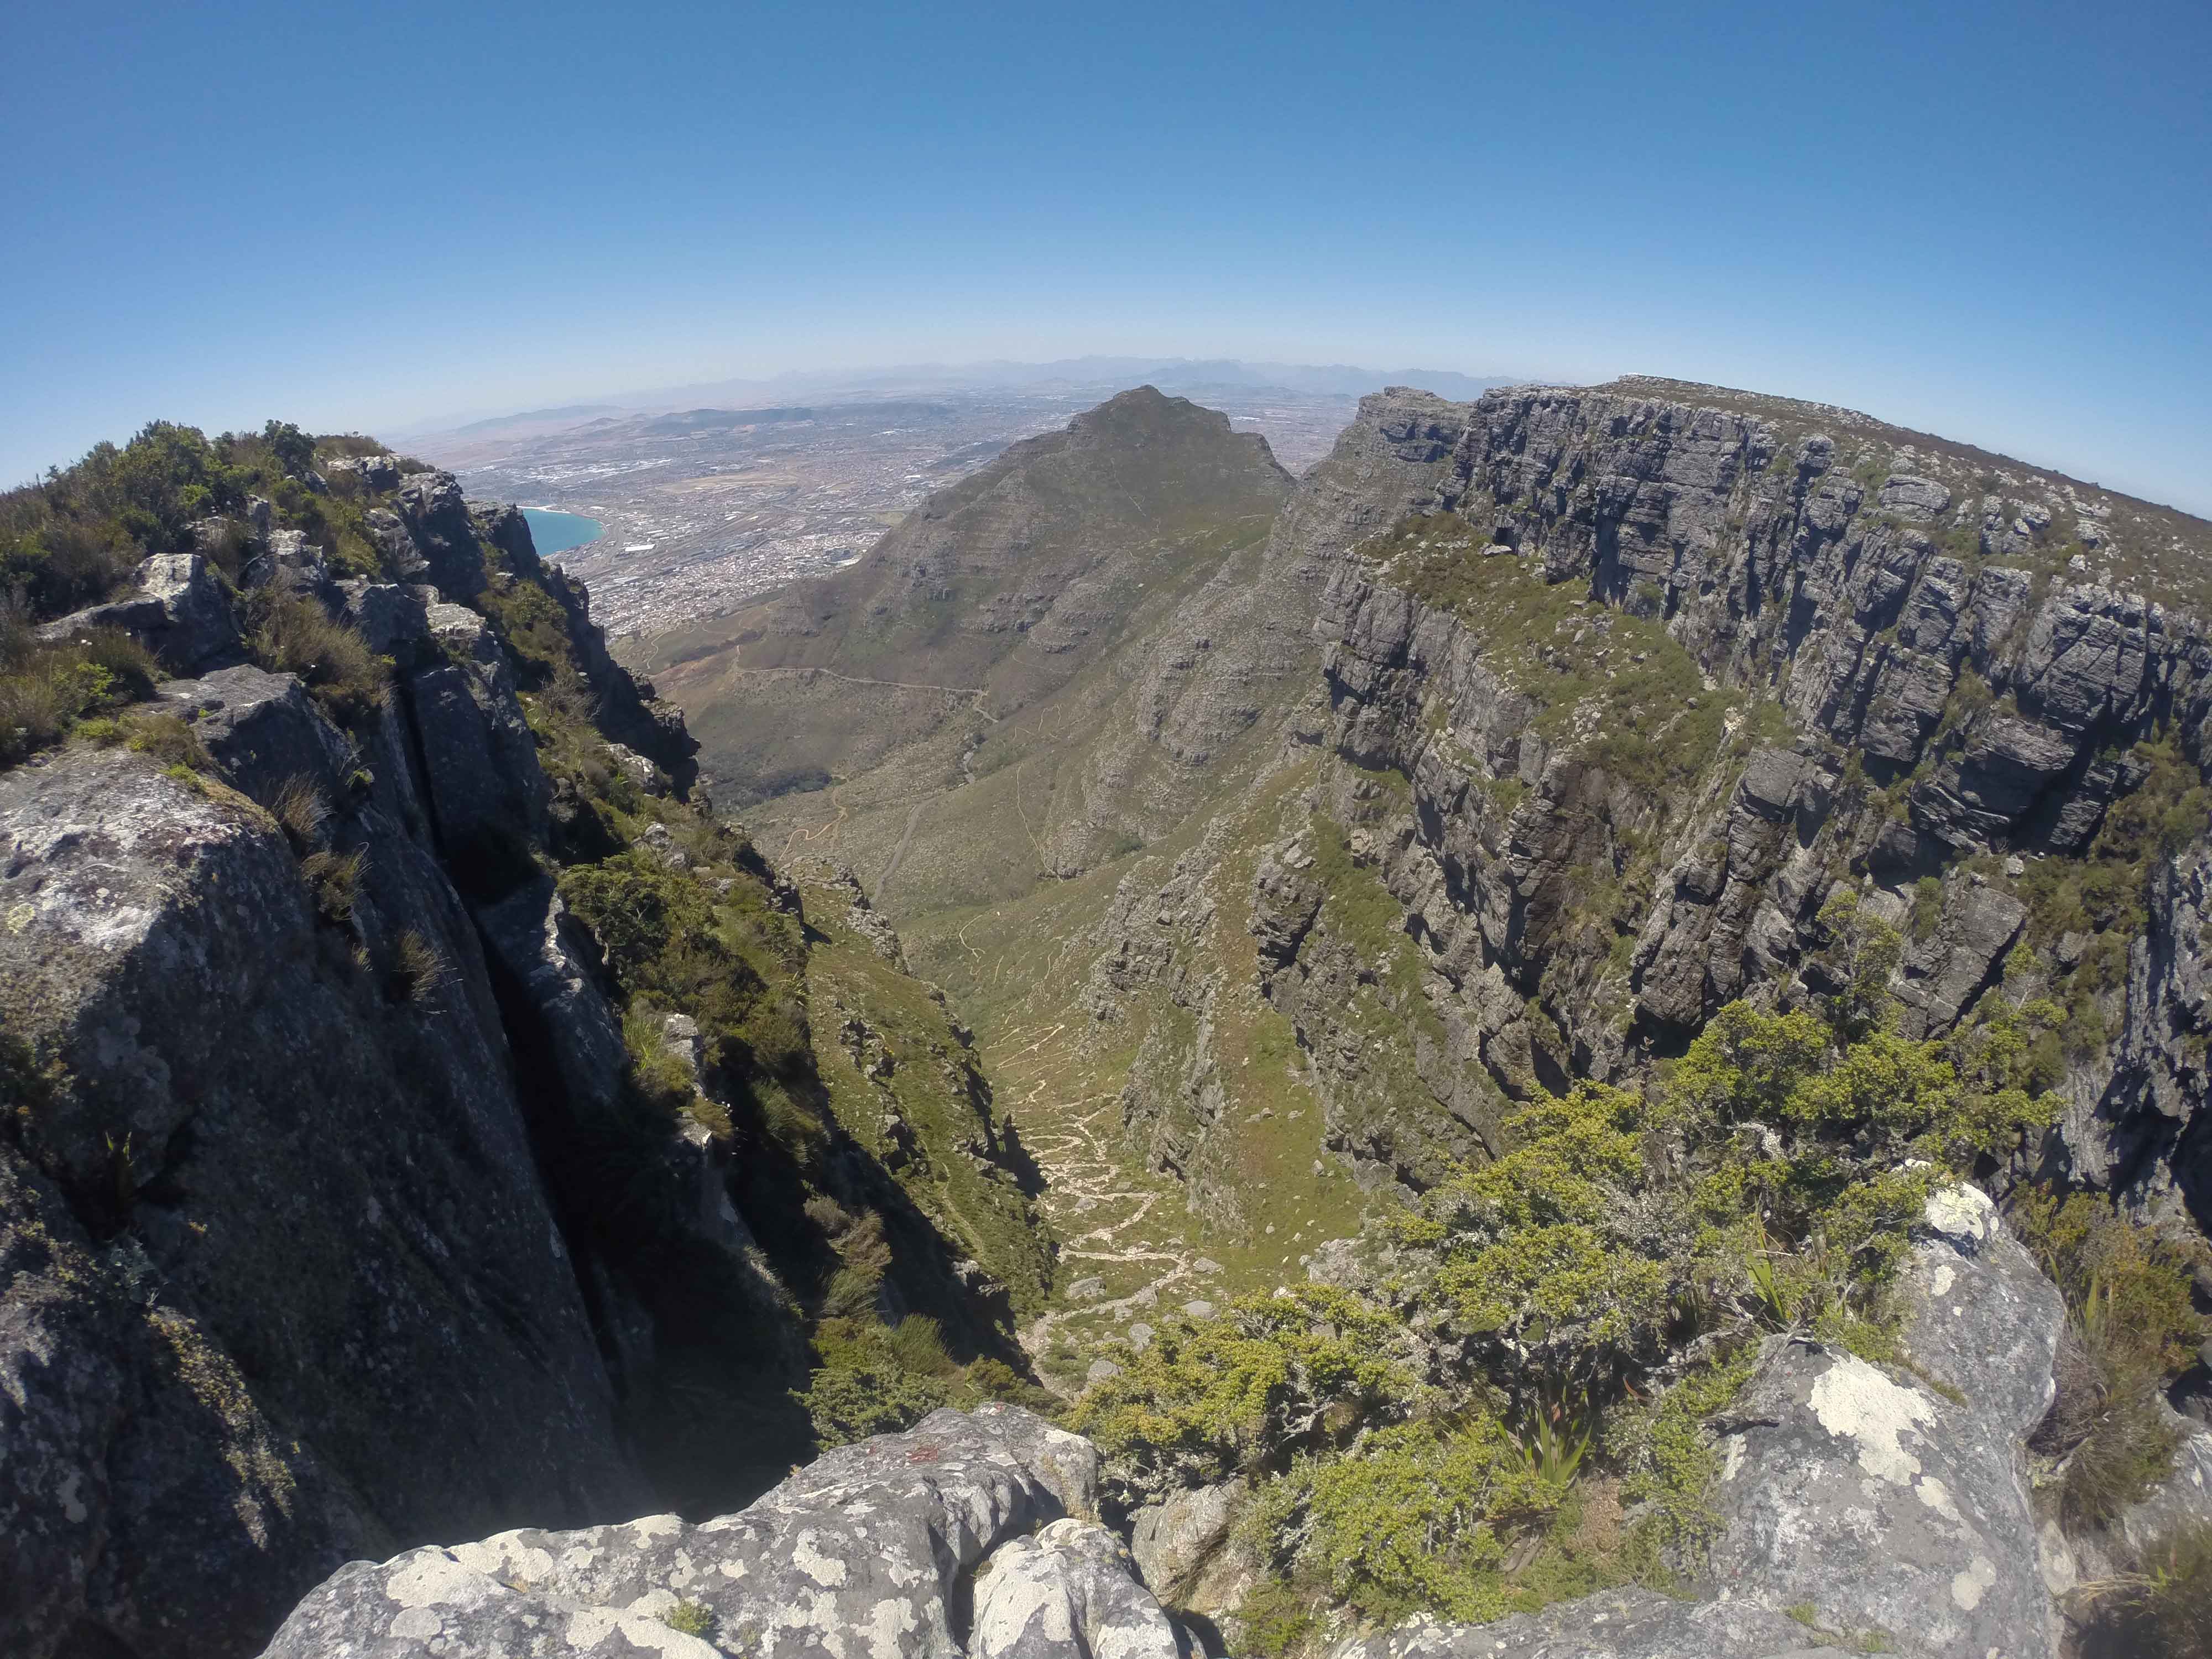 Repare no zigue-zague da trilha que leva à Table Mountain ali entre os morros.